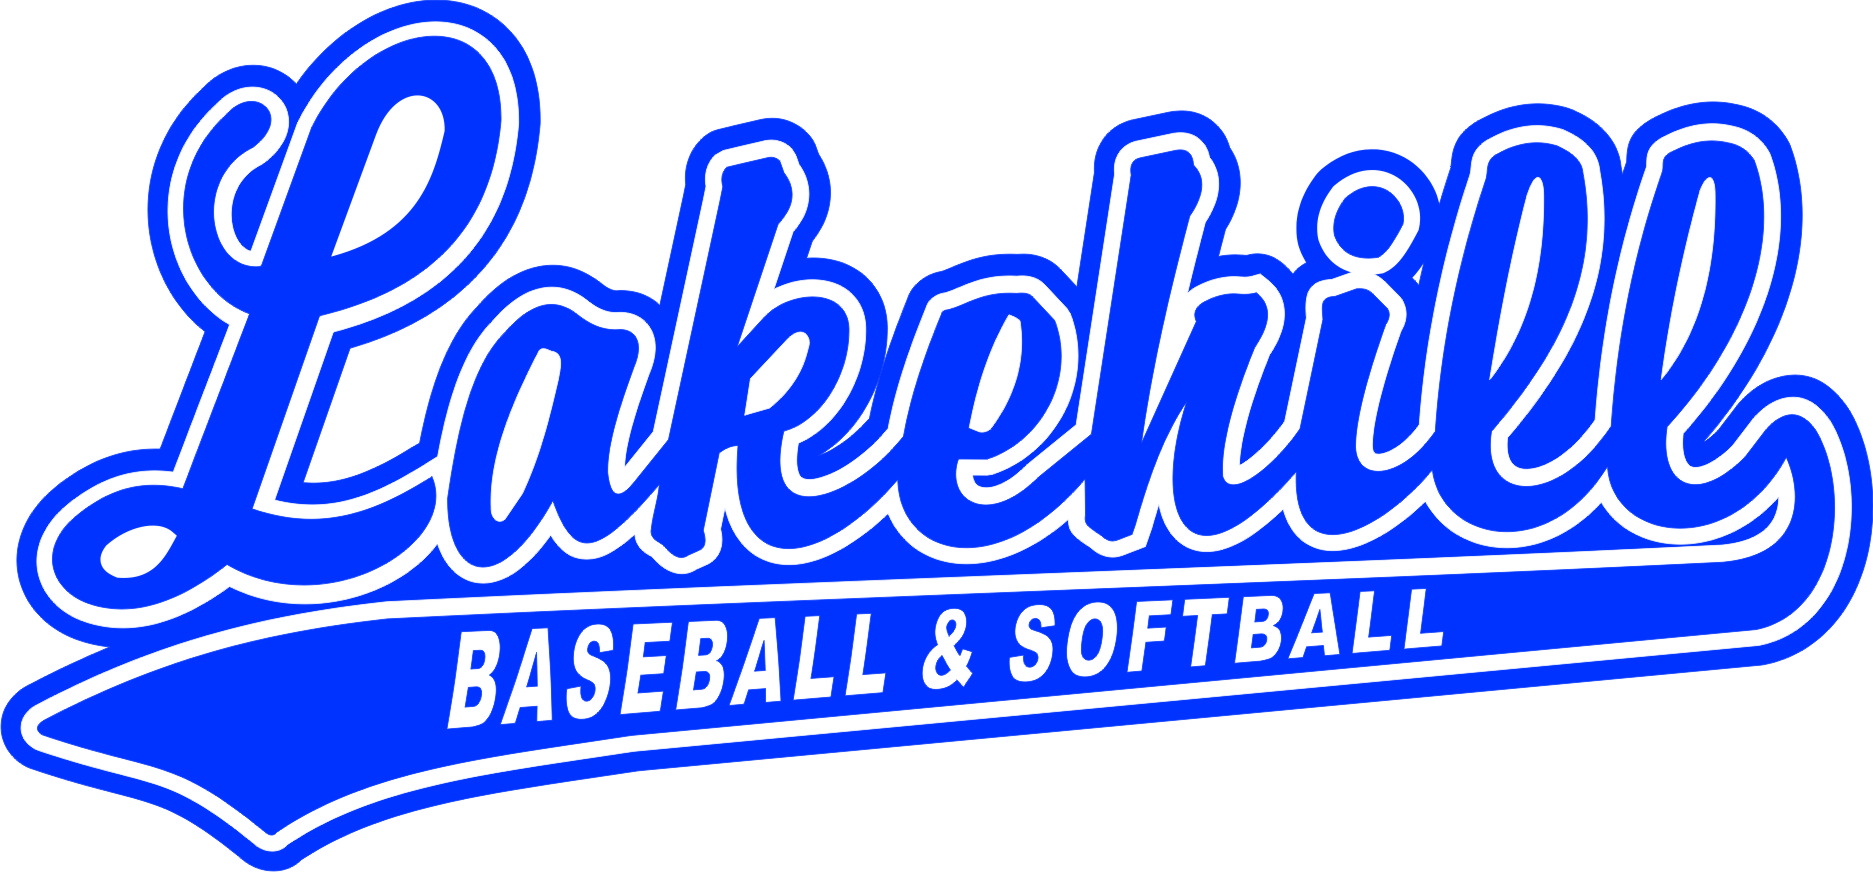 Lakehill Baseball And Softball Association